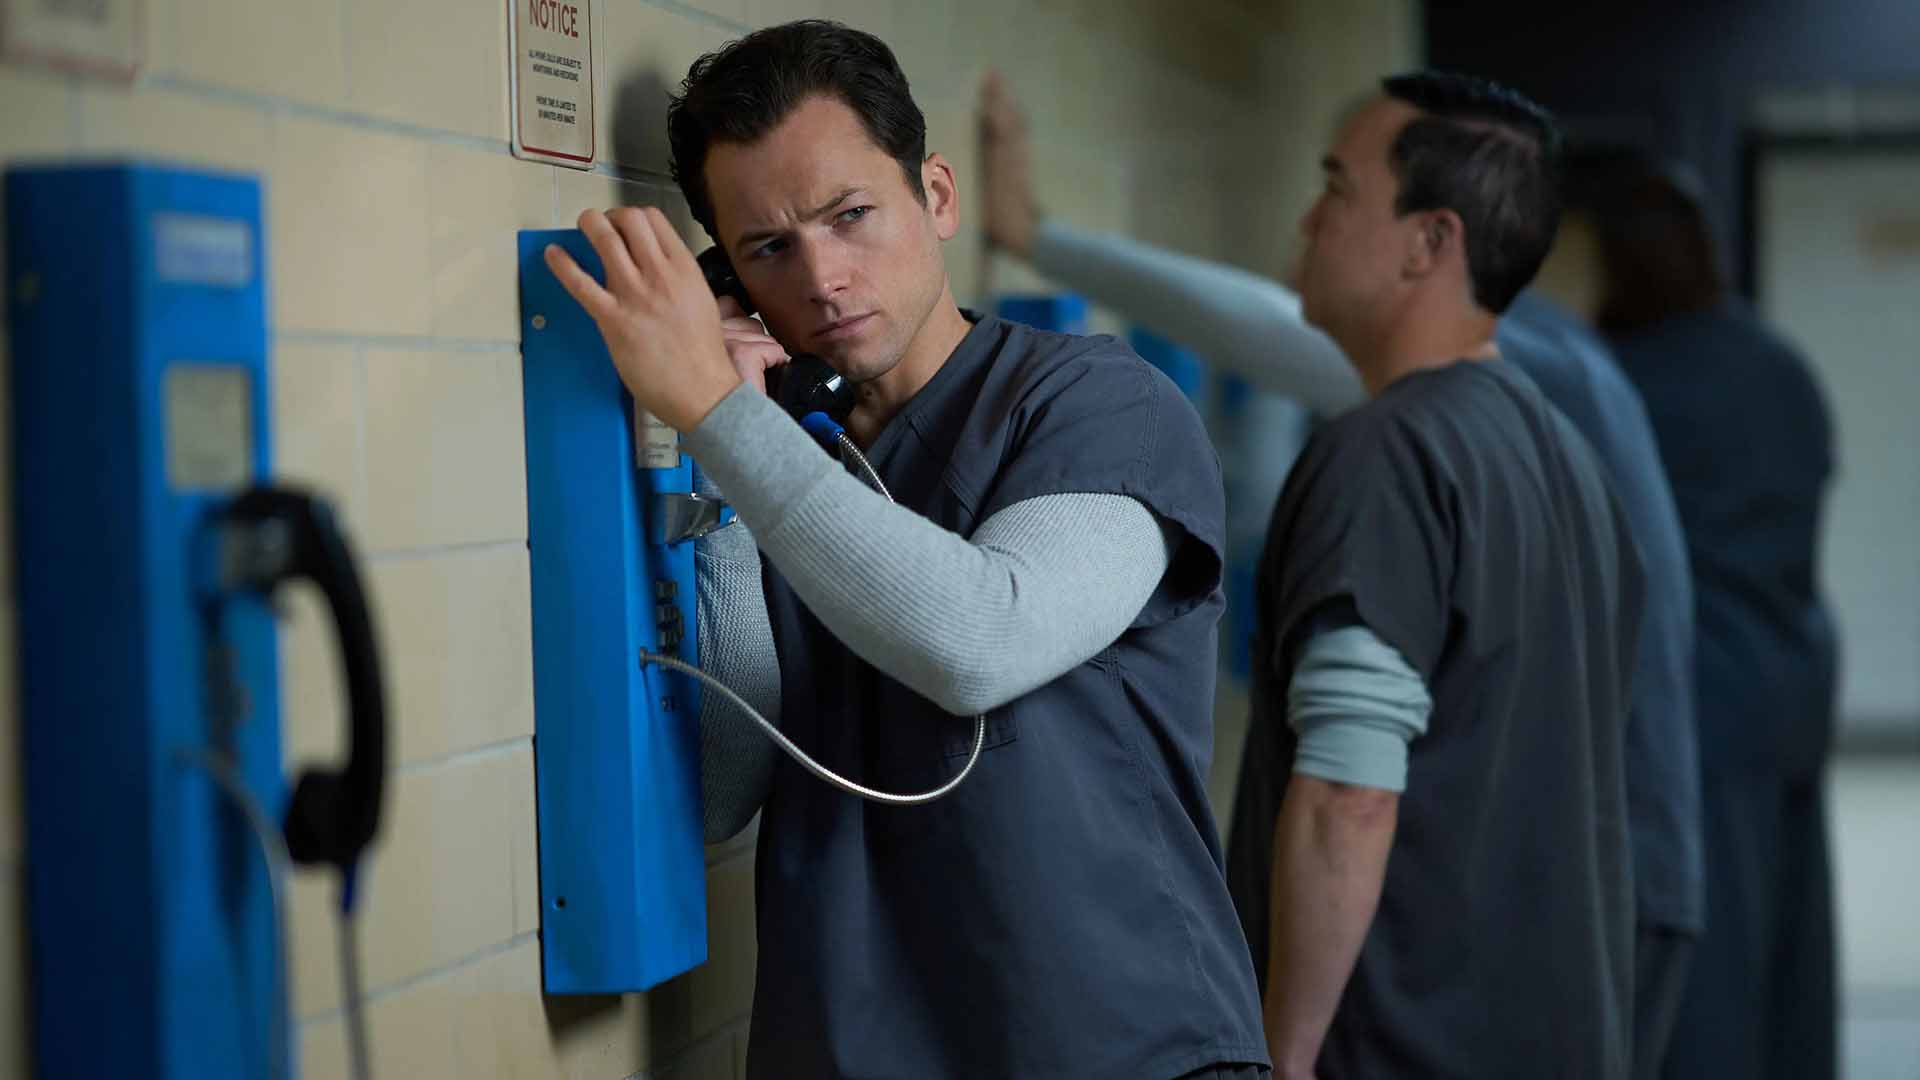 تارون اجرتون در حال تلفن صحبت کردن در زندان در سریال Black Bird